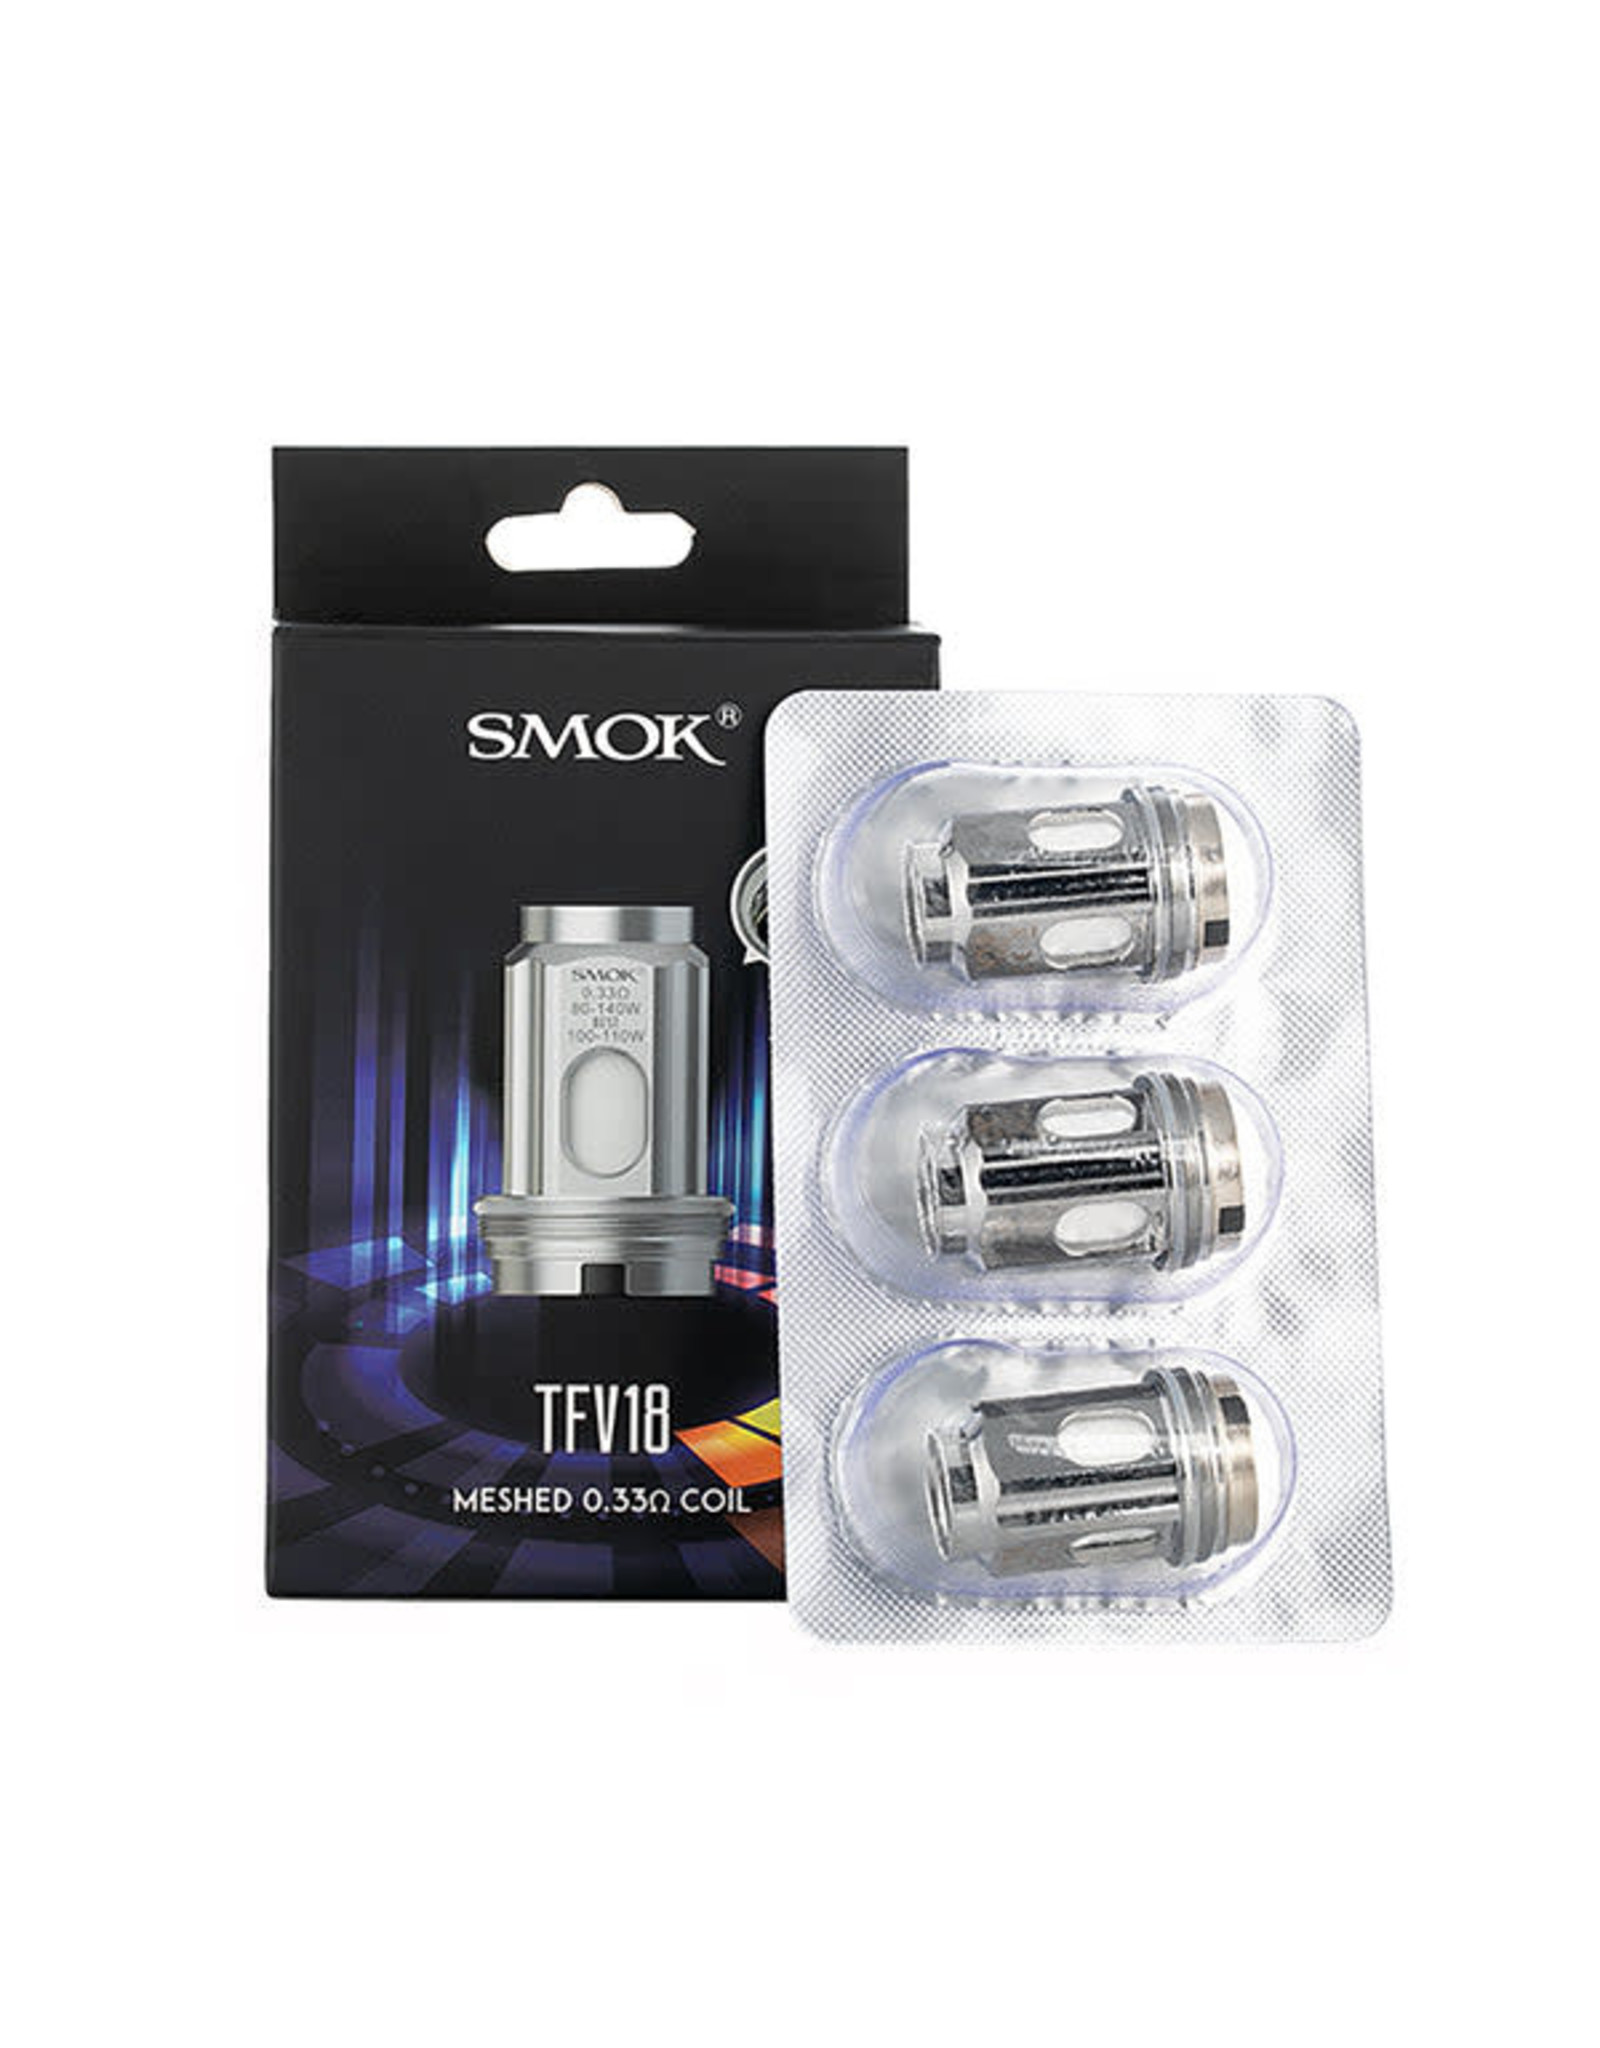 SmokTech Smok TFV18 Meshed Coil  0.33 Ω Box